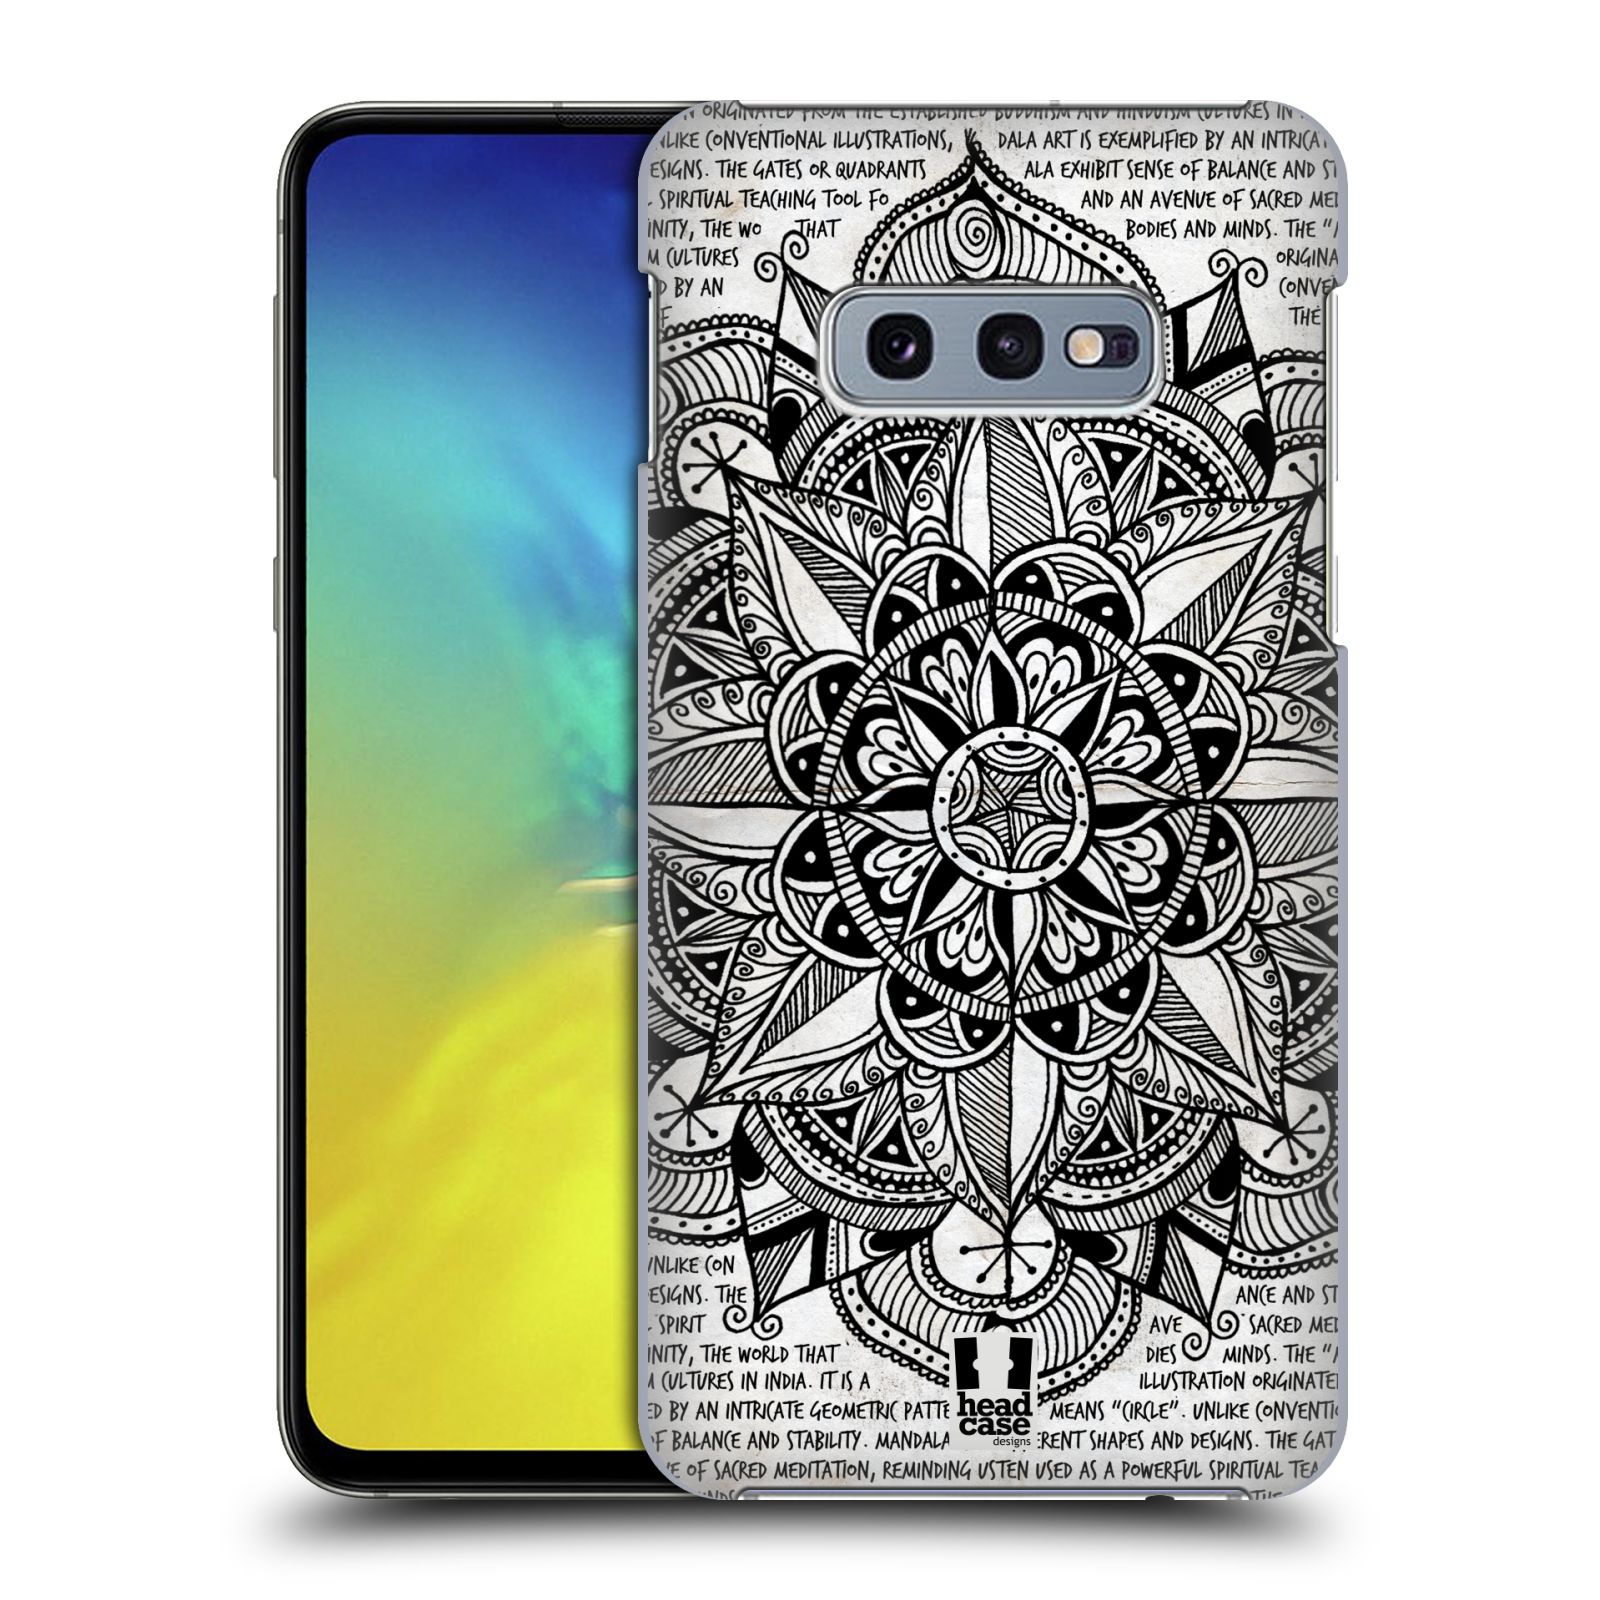 Pouzdro na mobil Samsung Galaxy S10e - HEAD CASE - vzor Indie Mandala slunce barevná ČERNÁ A BÍLÁ MAPA